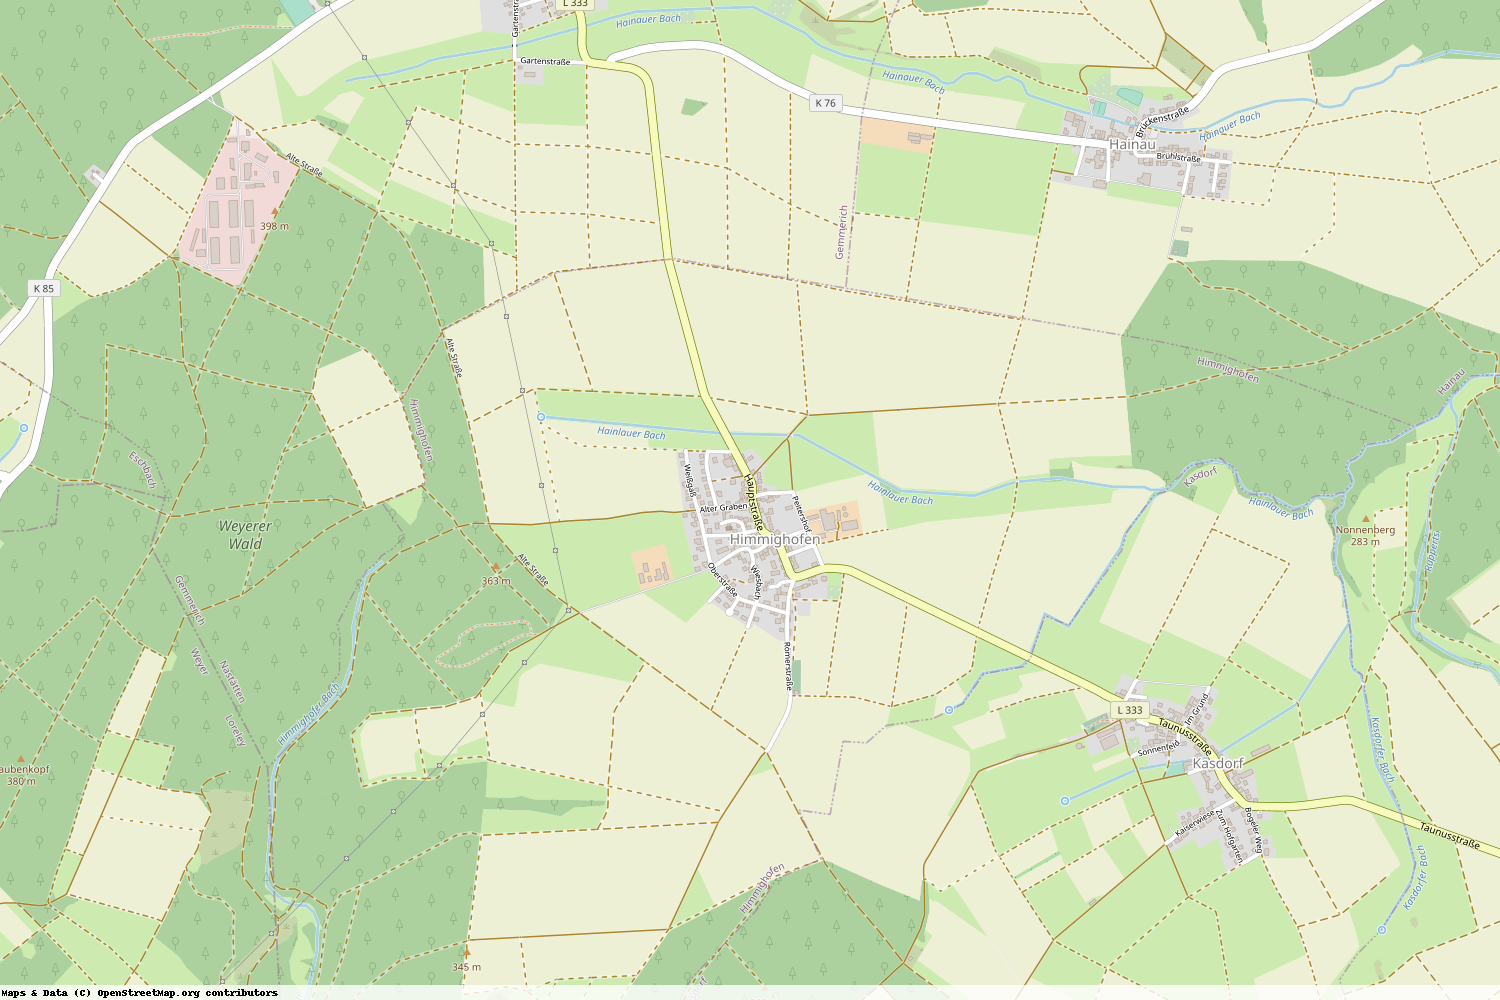 Ist gerade Stromausfall in Rheinland-Pfalz - Rhein-Lahn-Kreis - Himmighofen?